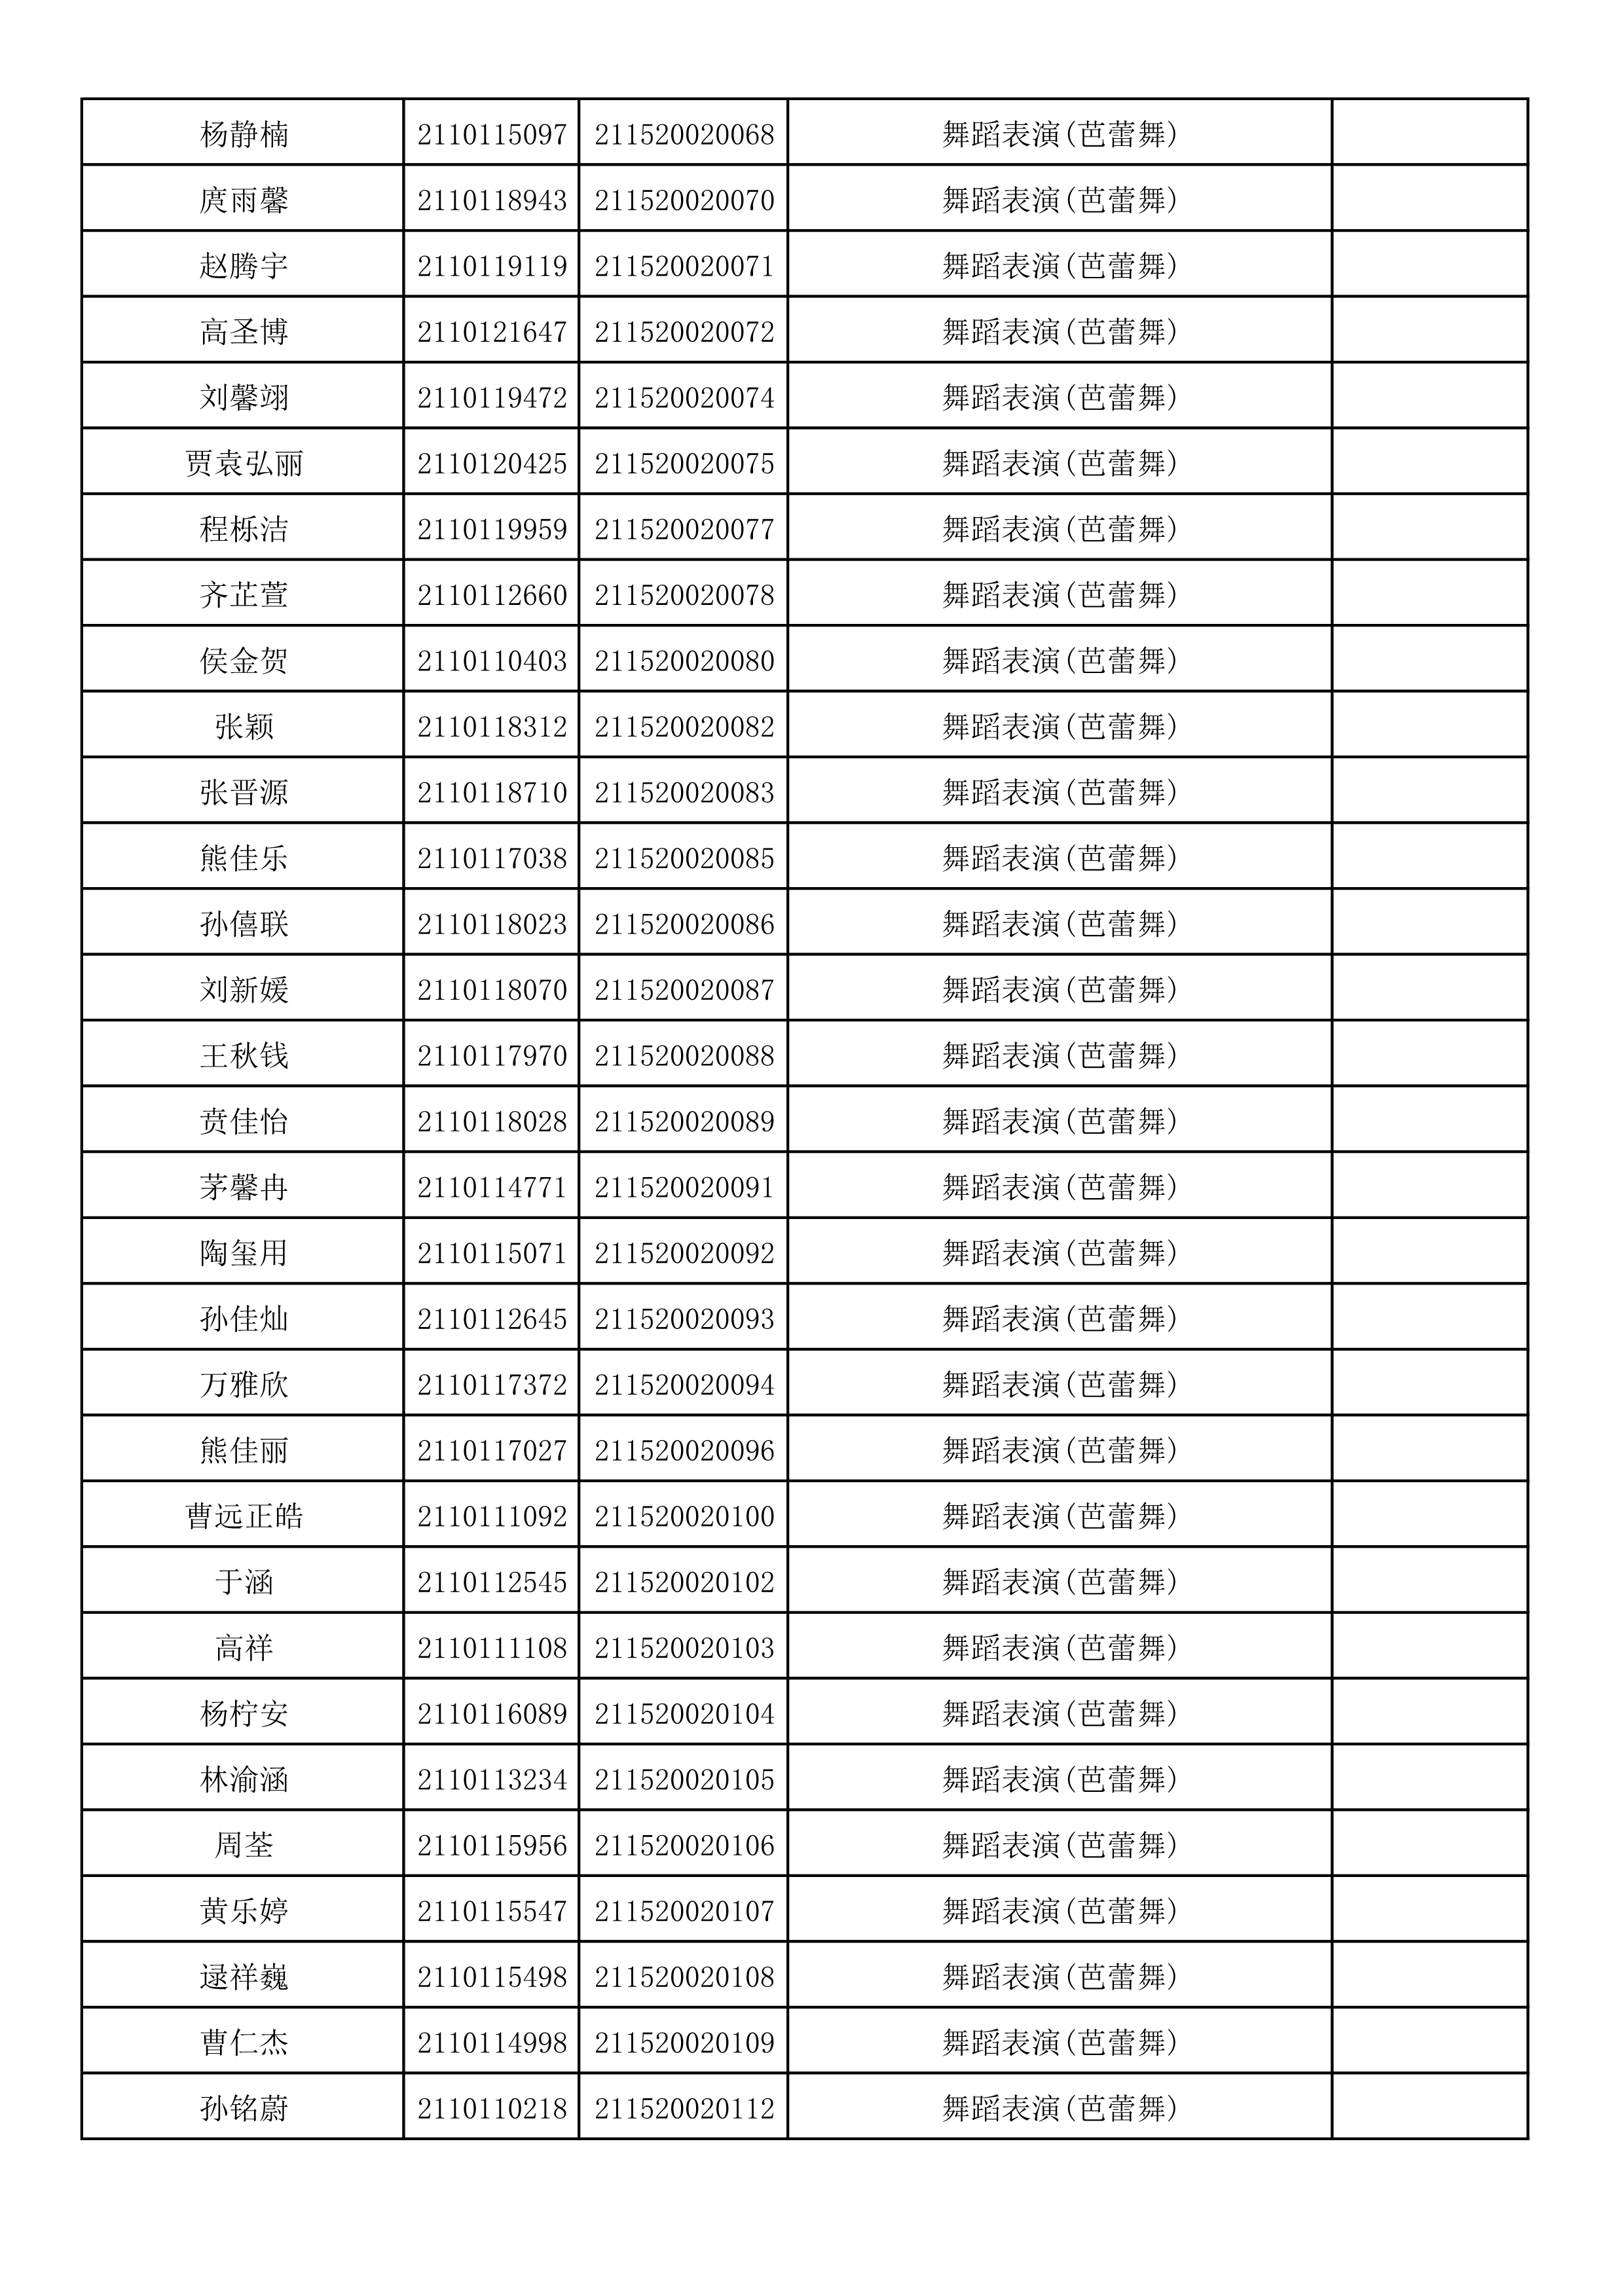 附件2：浙江音乐学院2021年本科招生专业校考初试合格考生名单_83.png